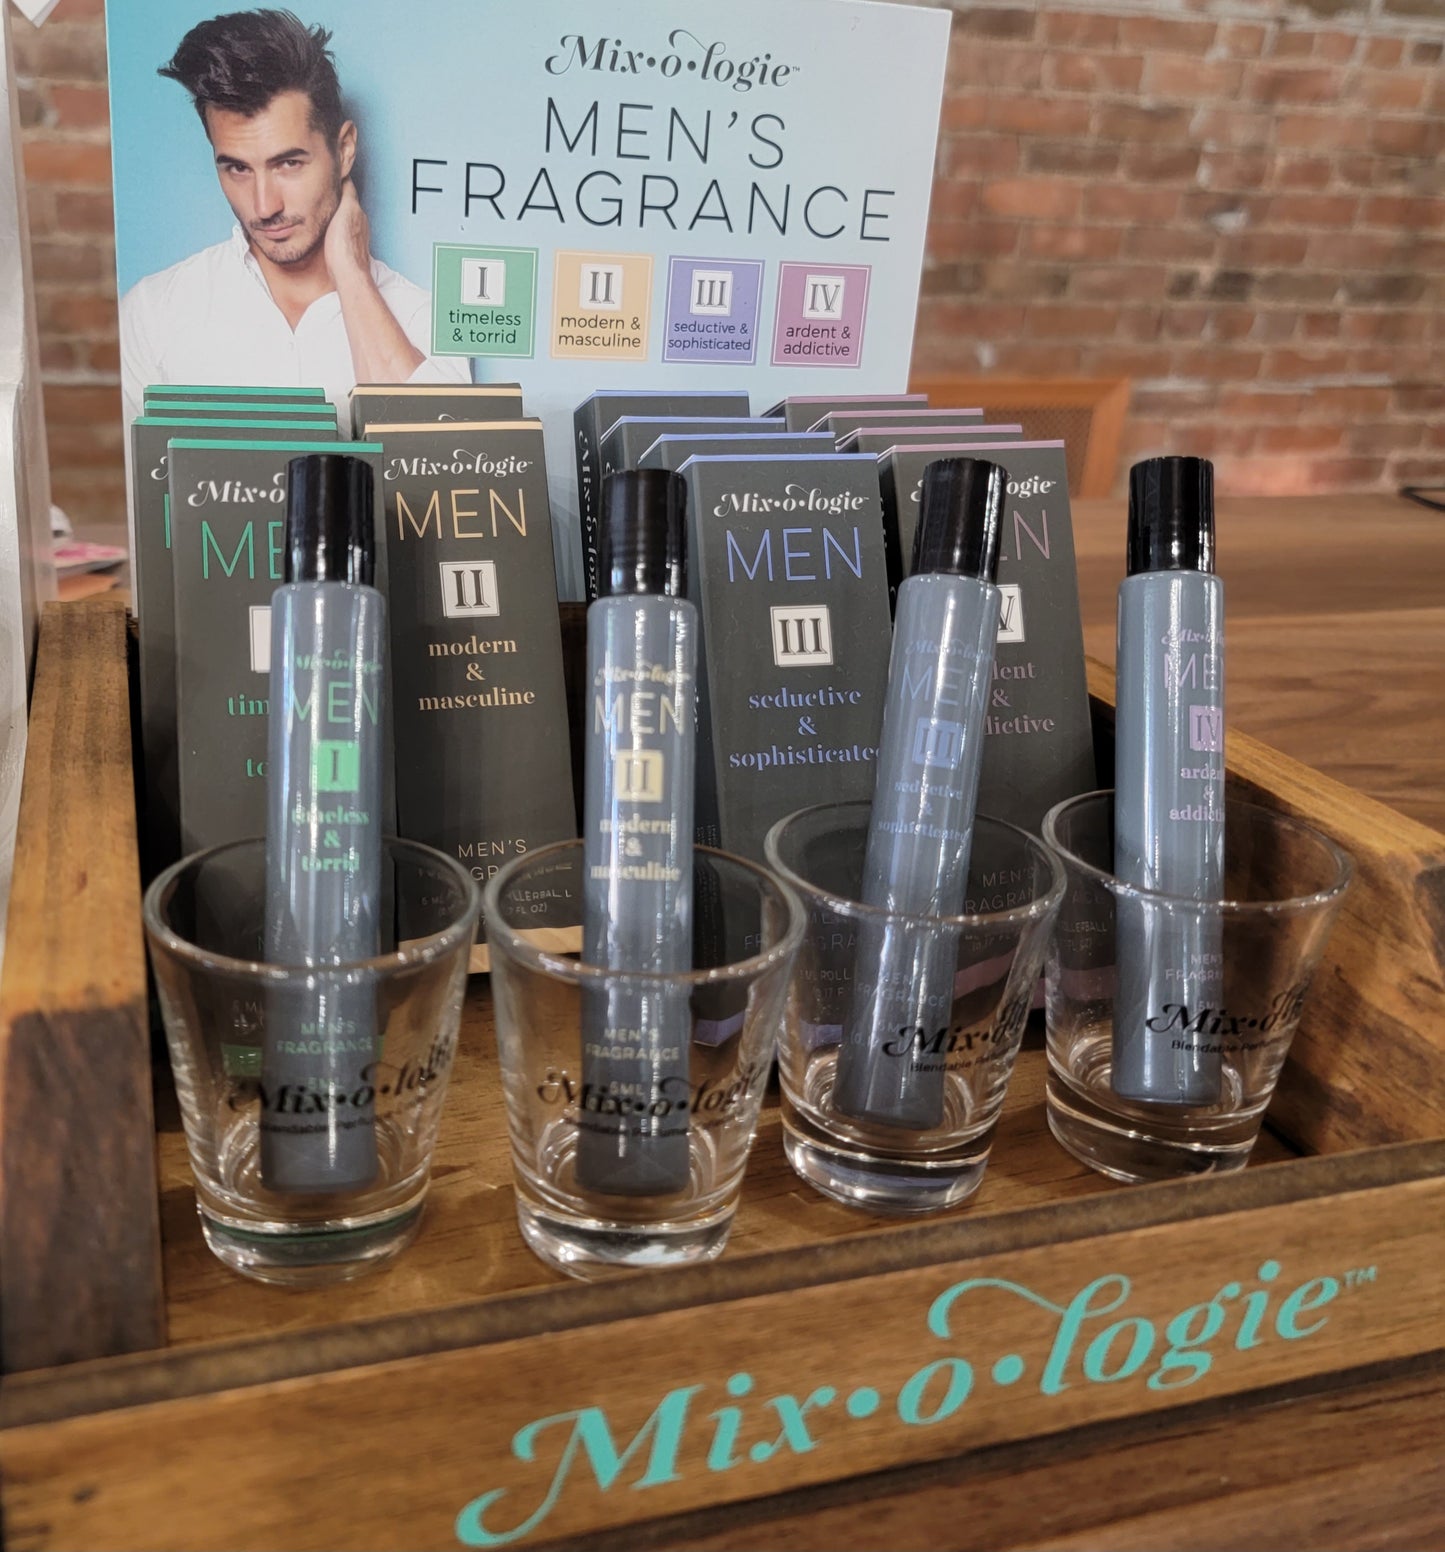 Mix-o-logie  Men's Fragrance